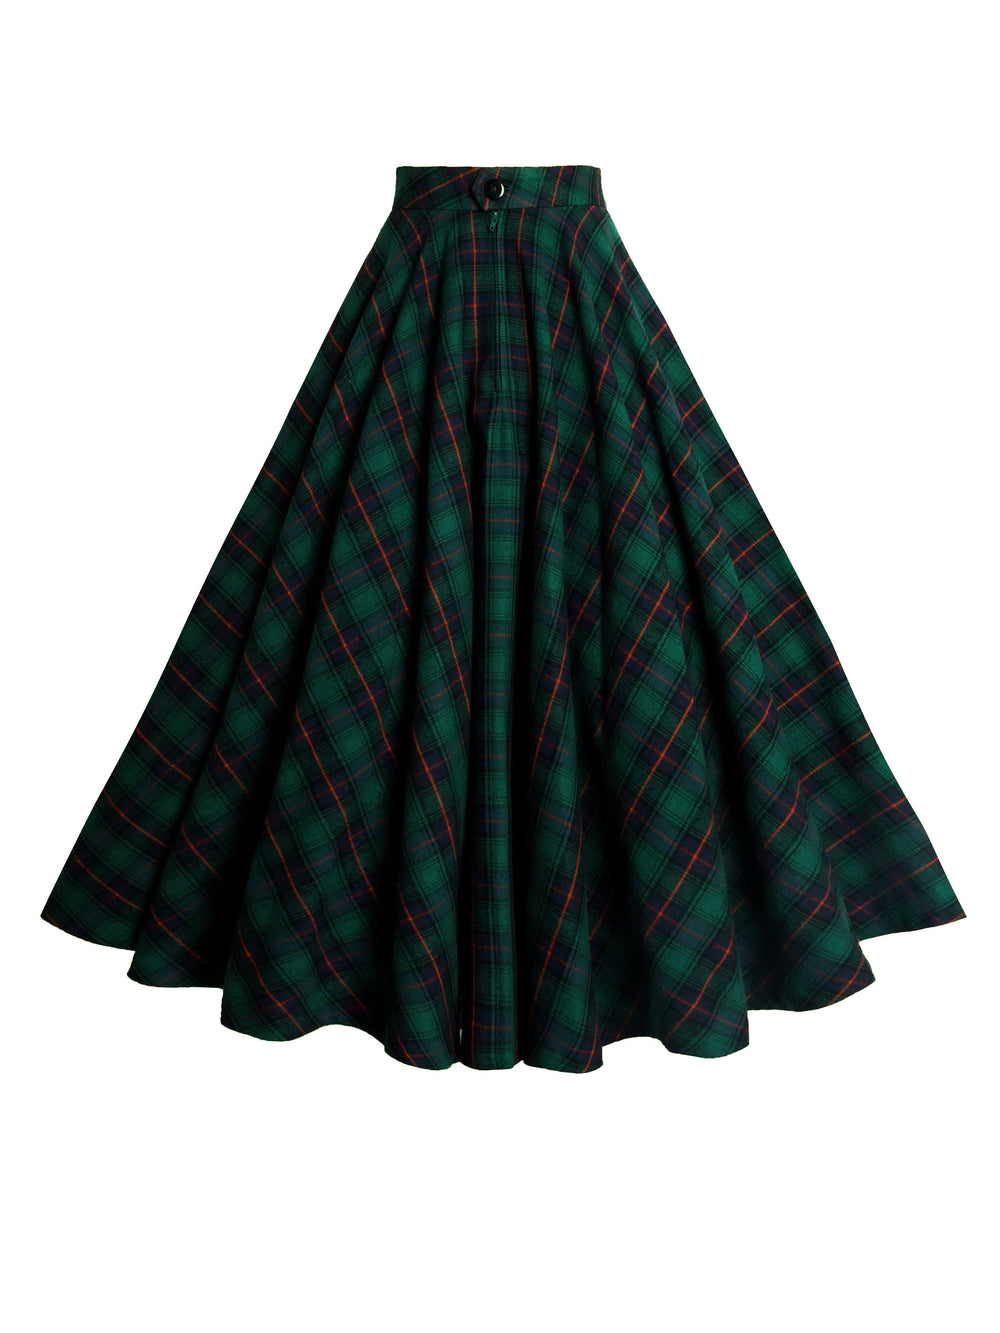 MTO - Lindy Skirt "Princeton Plaid"